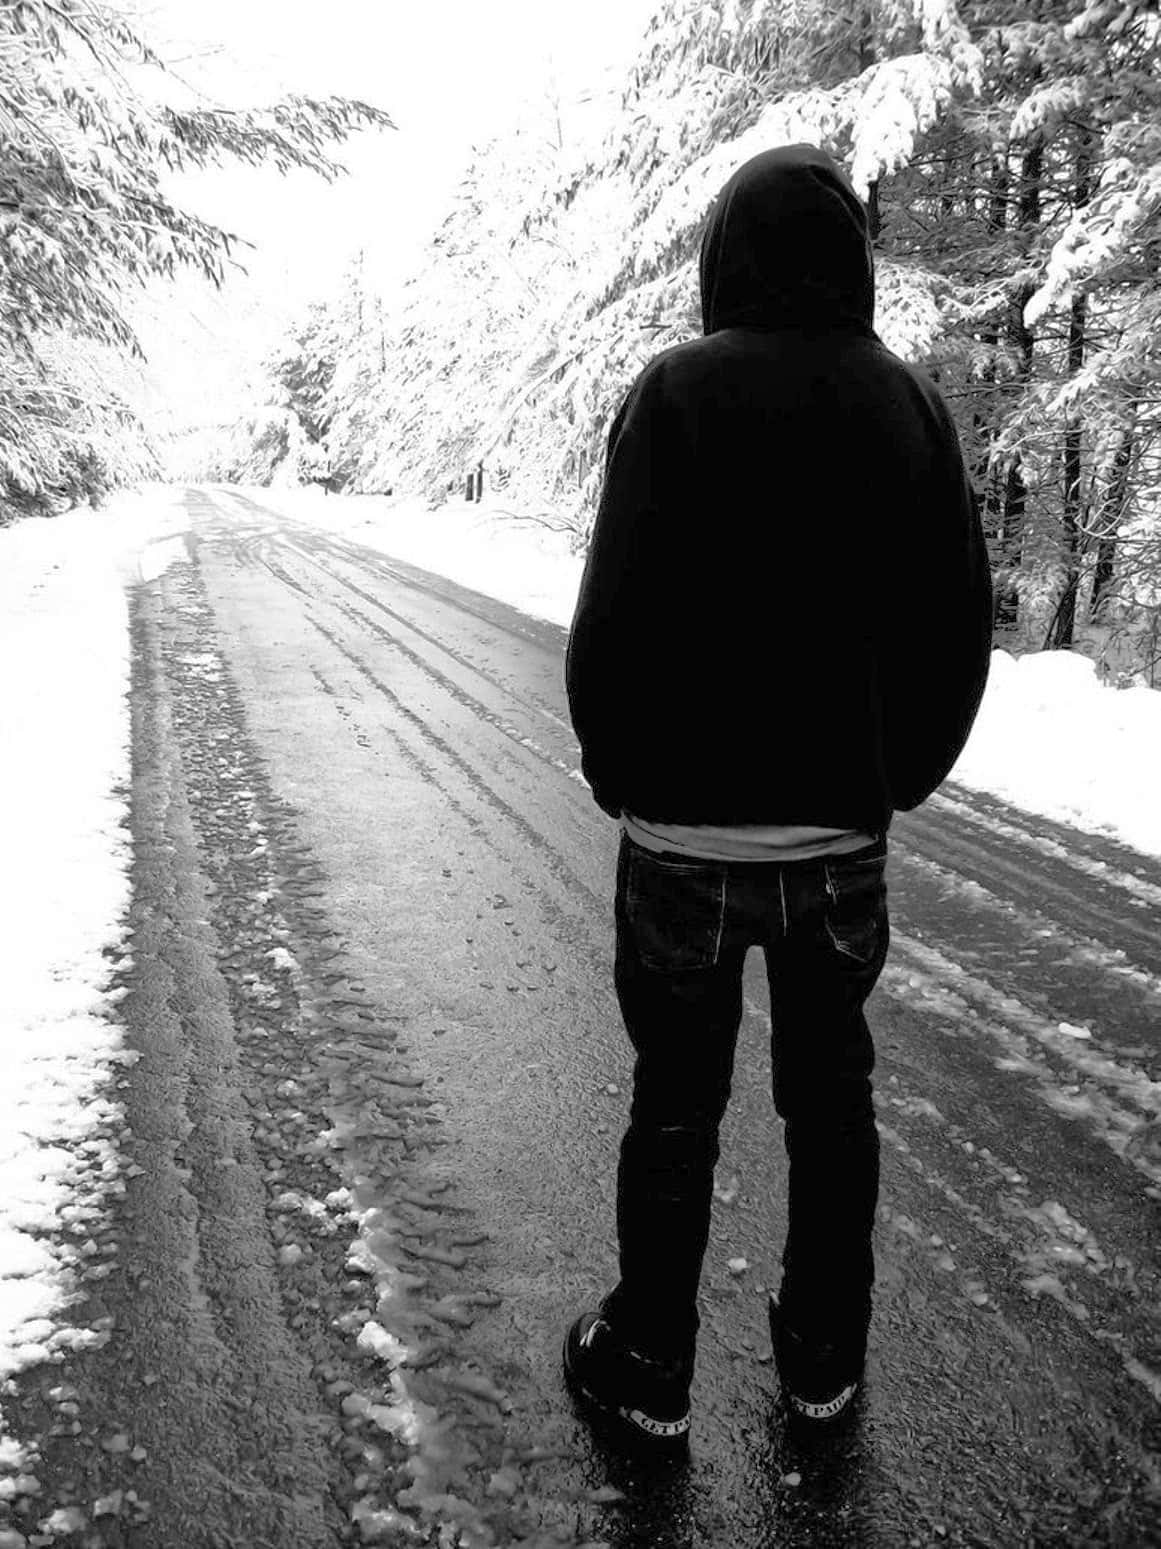 Ensampojke På En Snöig Väg Bild.